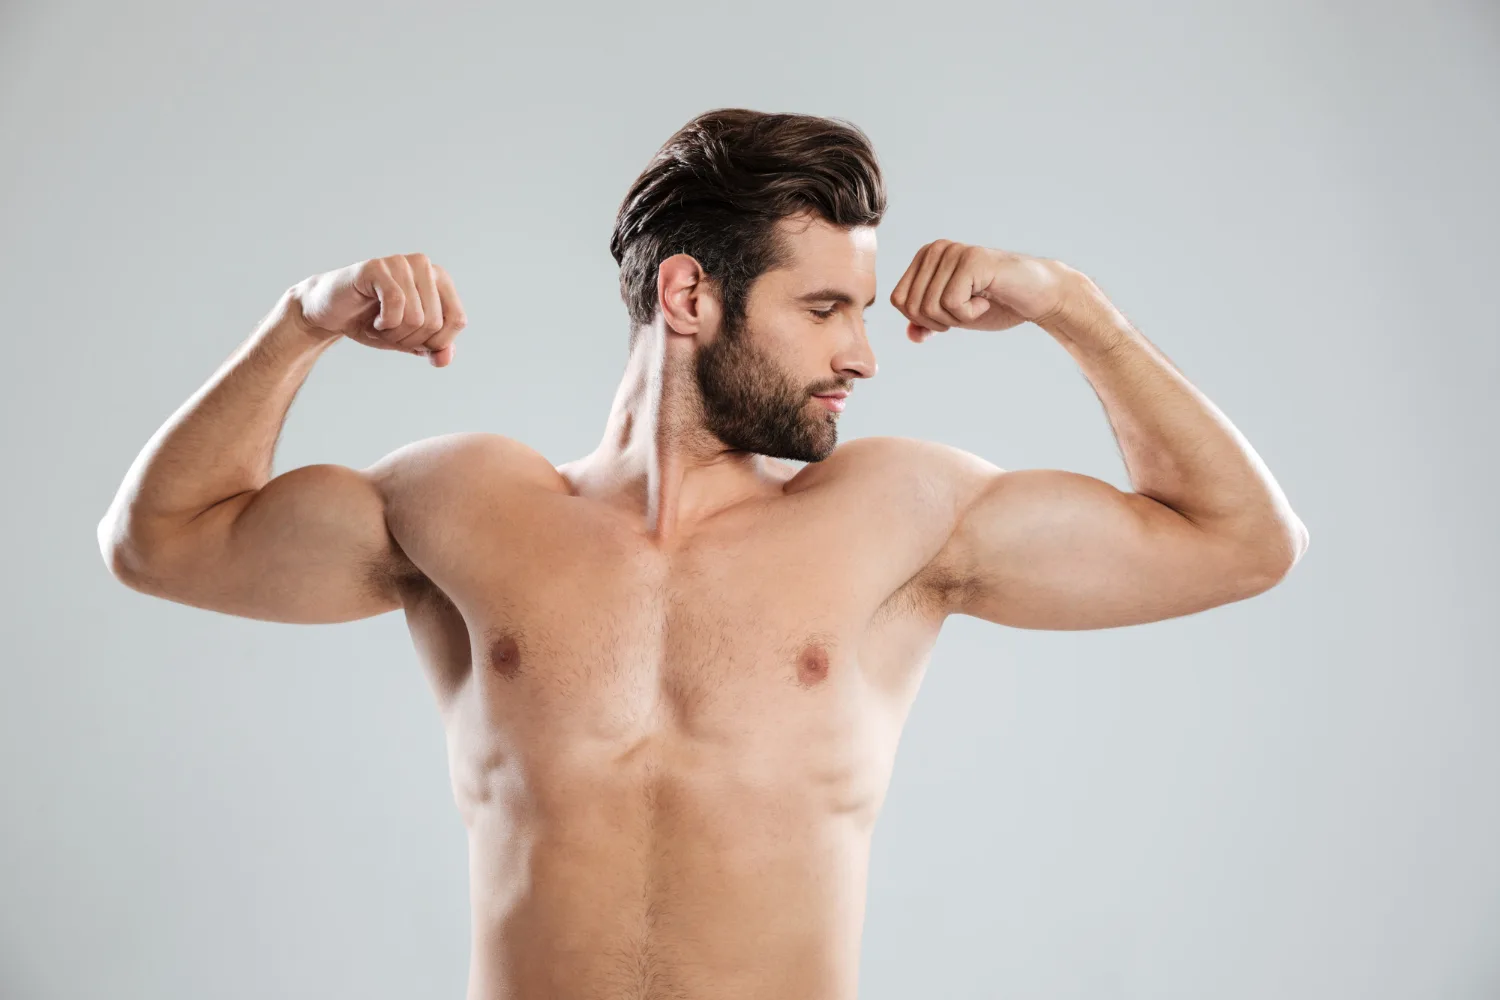 Testosterone : टेस्टोस्टेरोन बढ़ाने का सबसे आसान तरीका क्या है ?